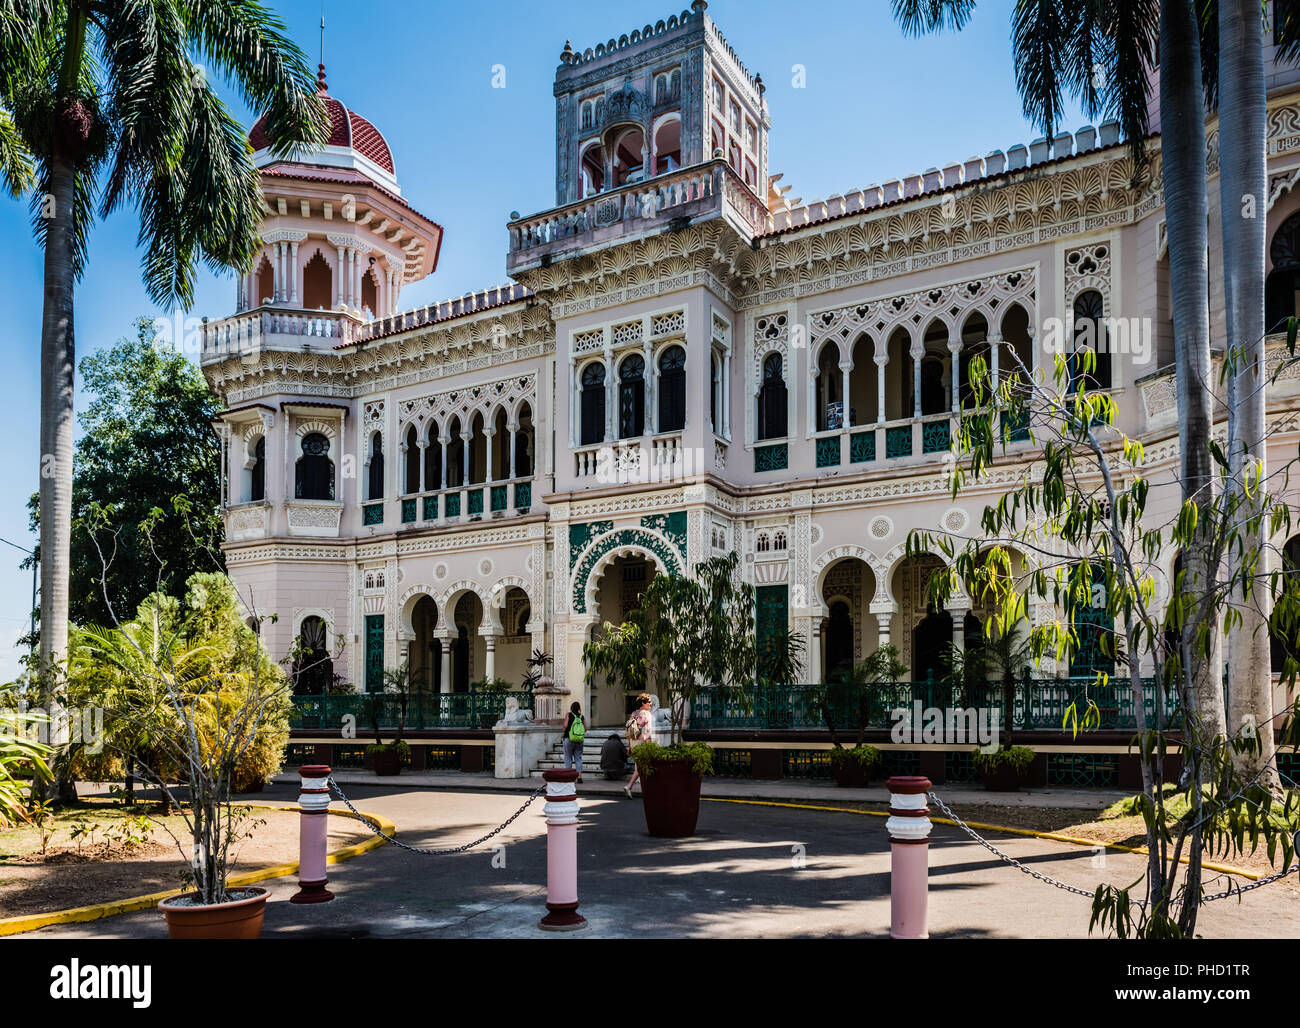 Palacio de Valle ist eine prunkvolle Palast 1917 erbaut mit der Absicht, es ein Casino. Es beherbergt heute ein gehobenes Restaurant und Bar mit Terrasse Stockfoto